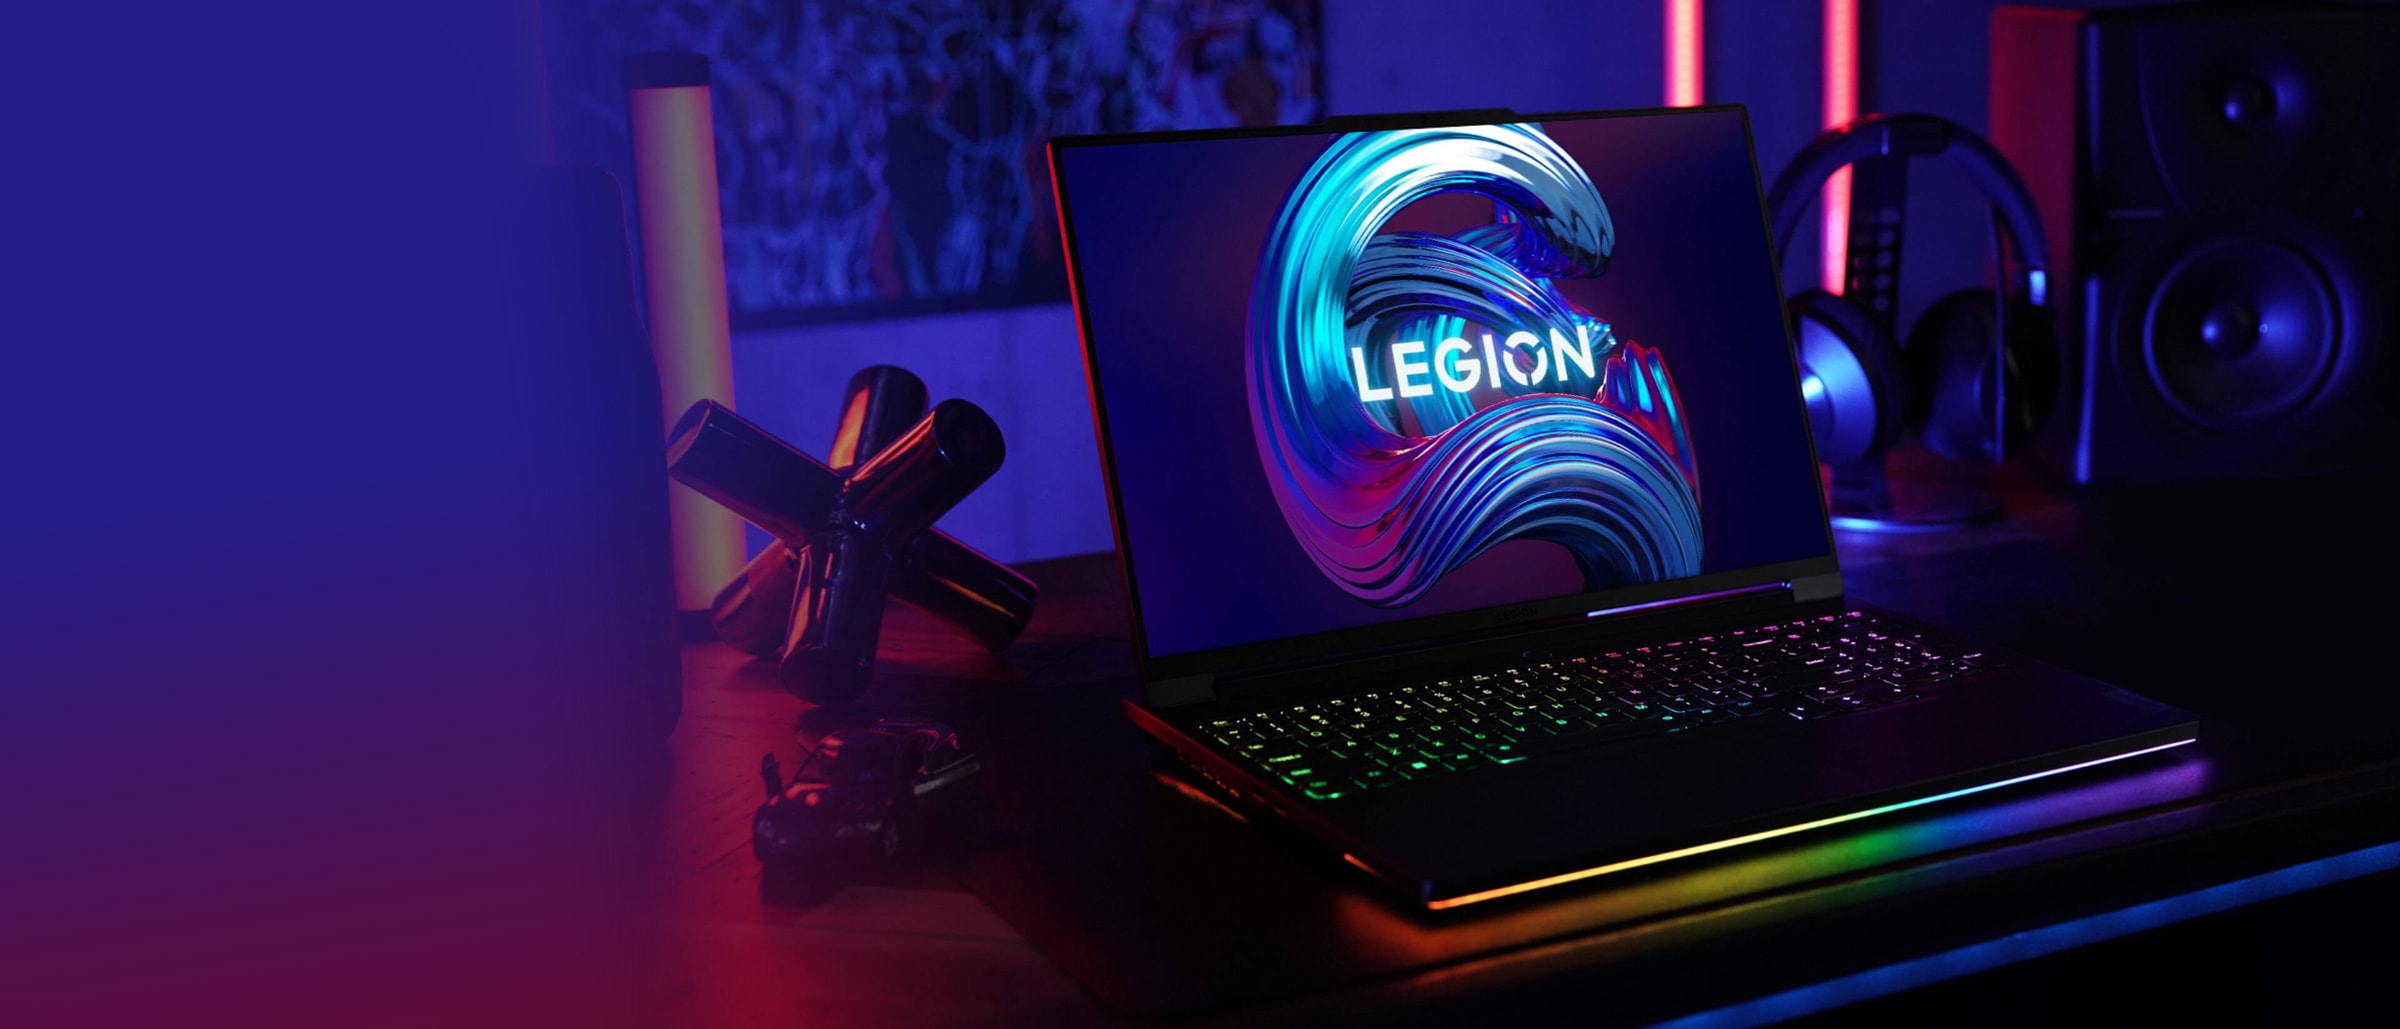 Bærbar Lenovo Legion-computer set forfra, åben 90 grader med fokus på tastatur og skærm og let vinklet for at vise portene i venstre side.